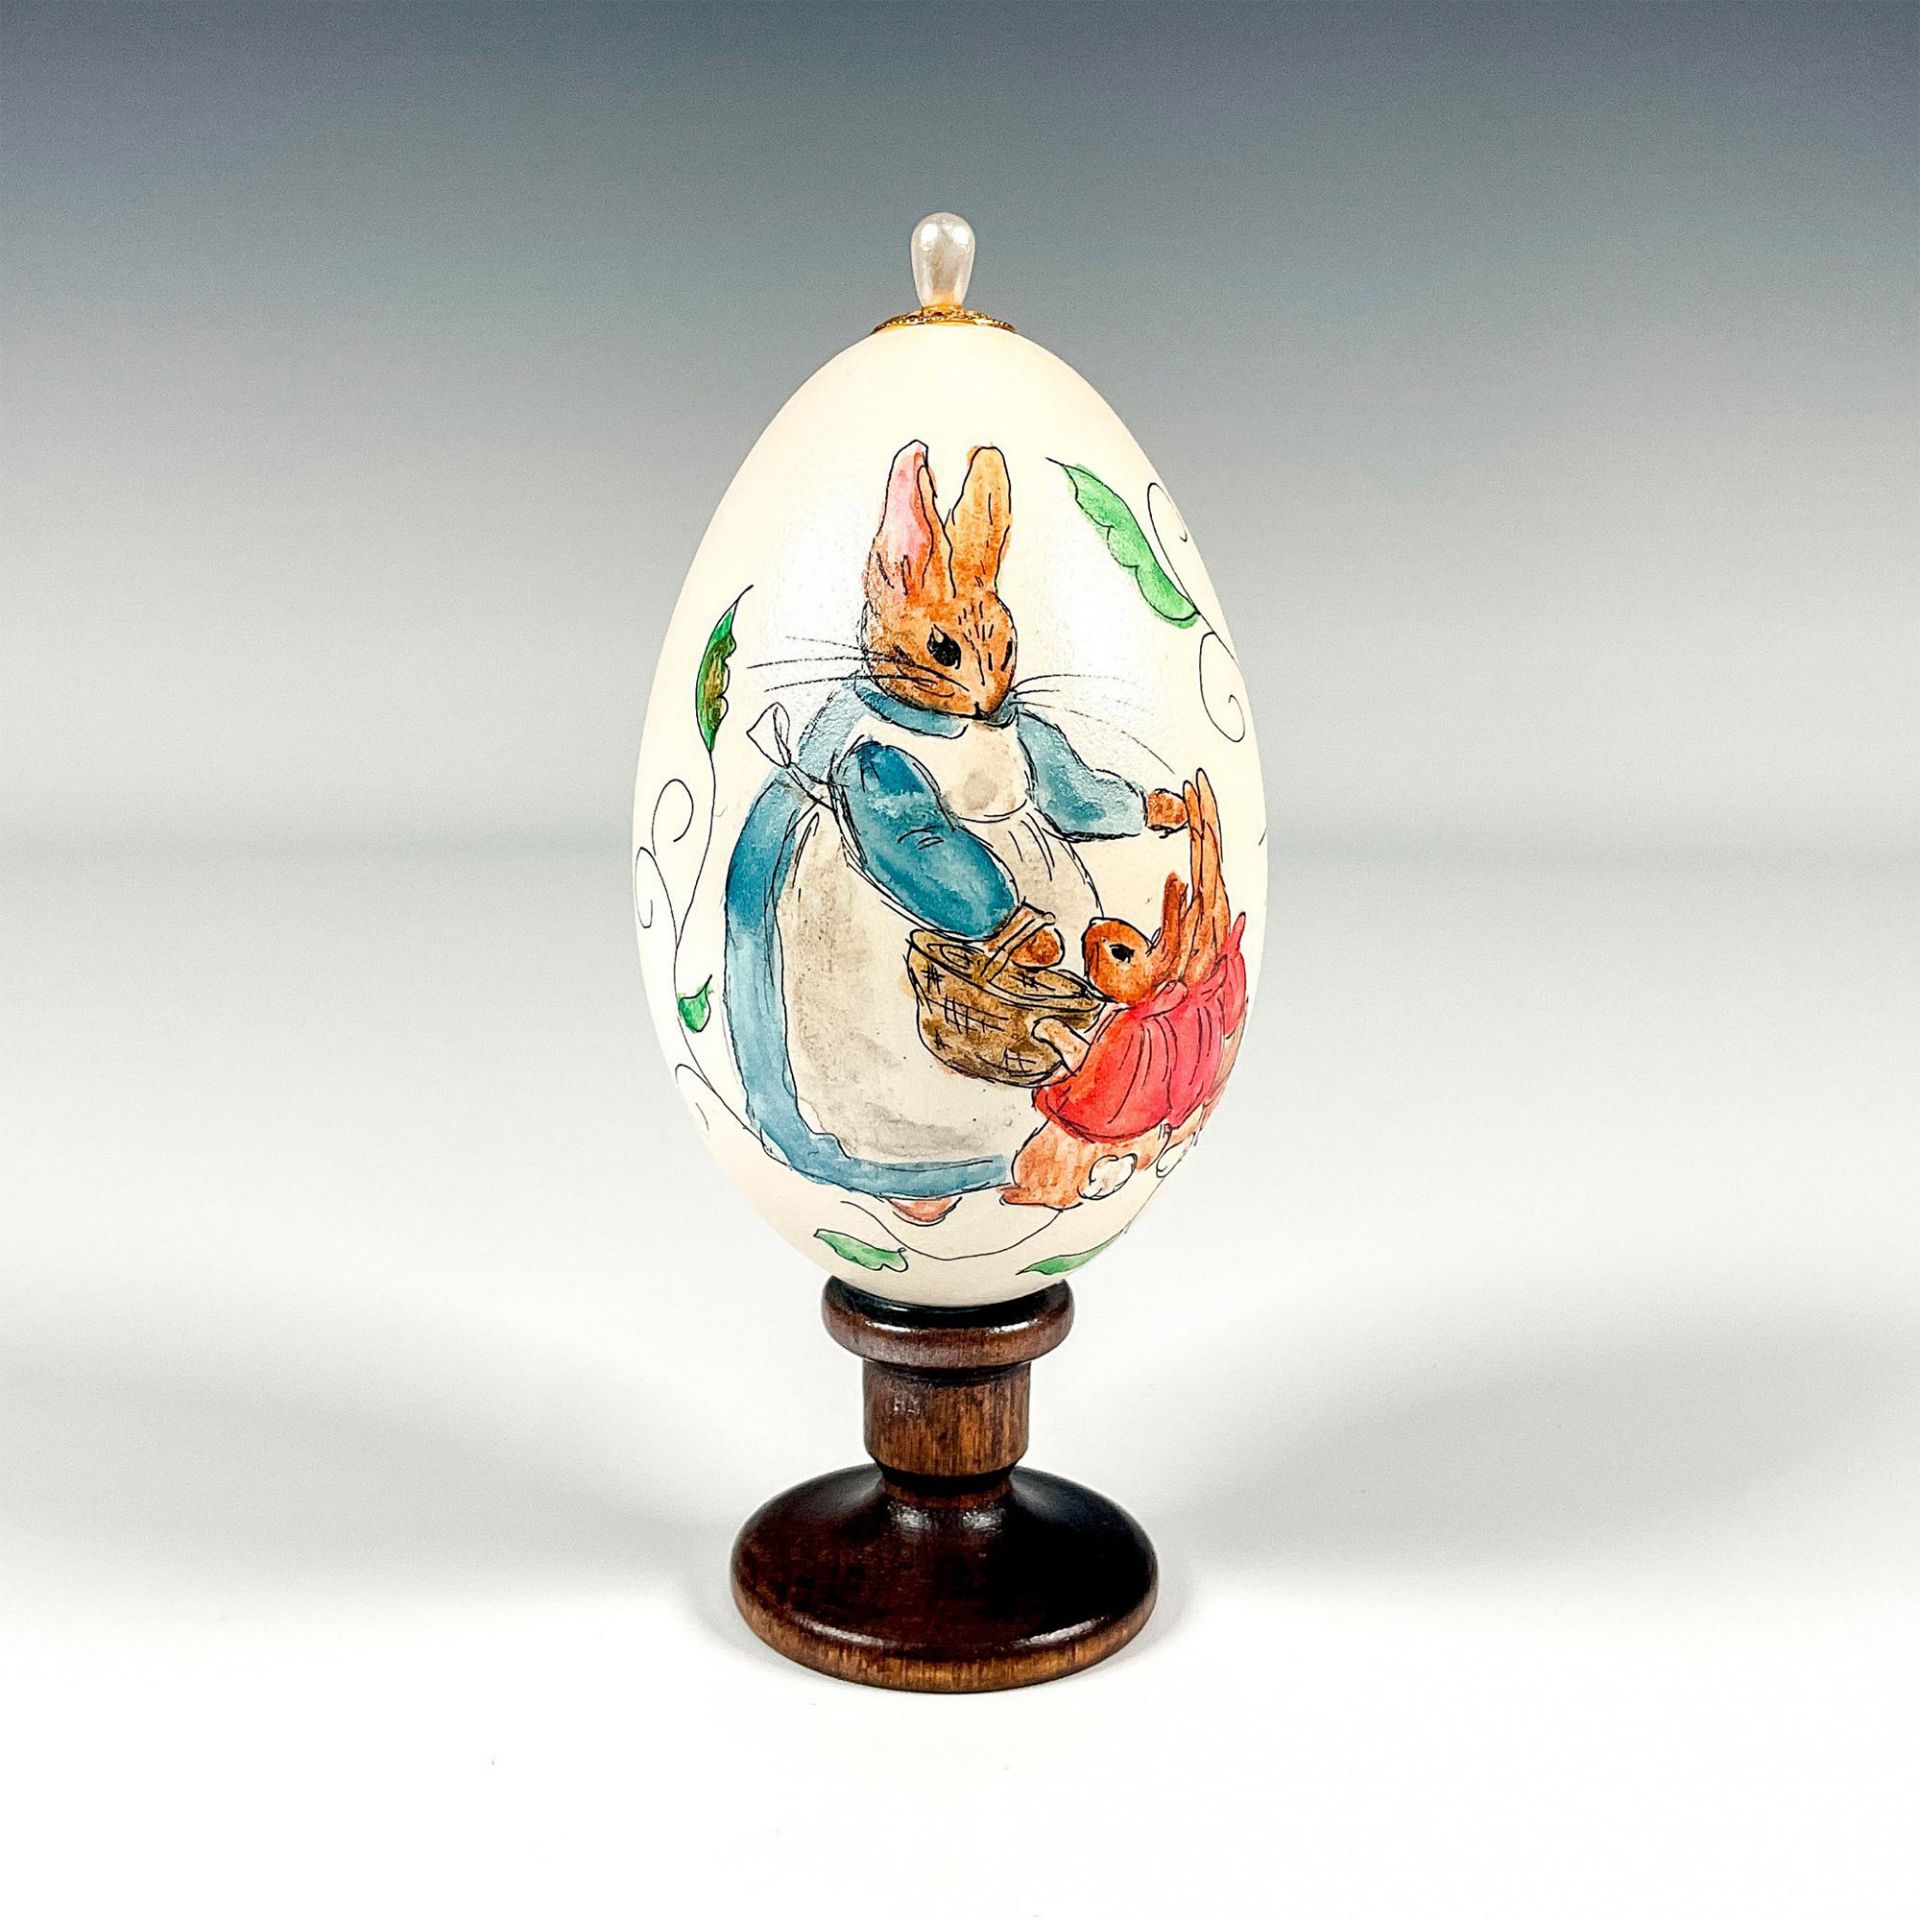 Vintage Artist Signed Peter Rabbit Decorative Egg - Image 2 of 4